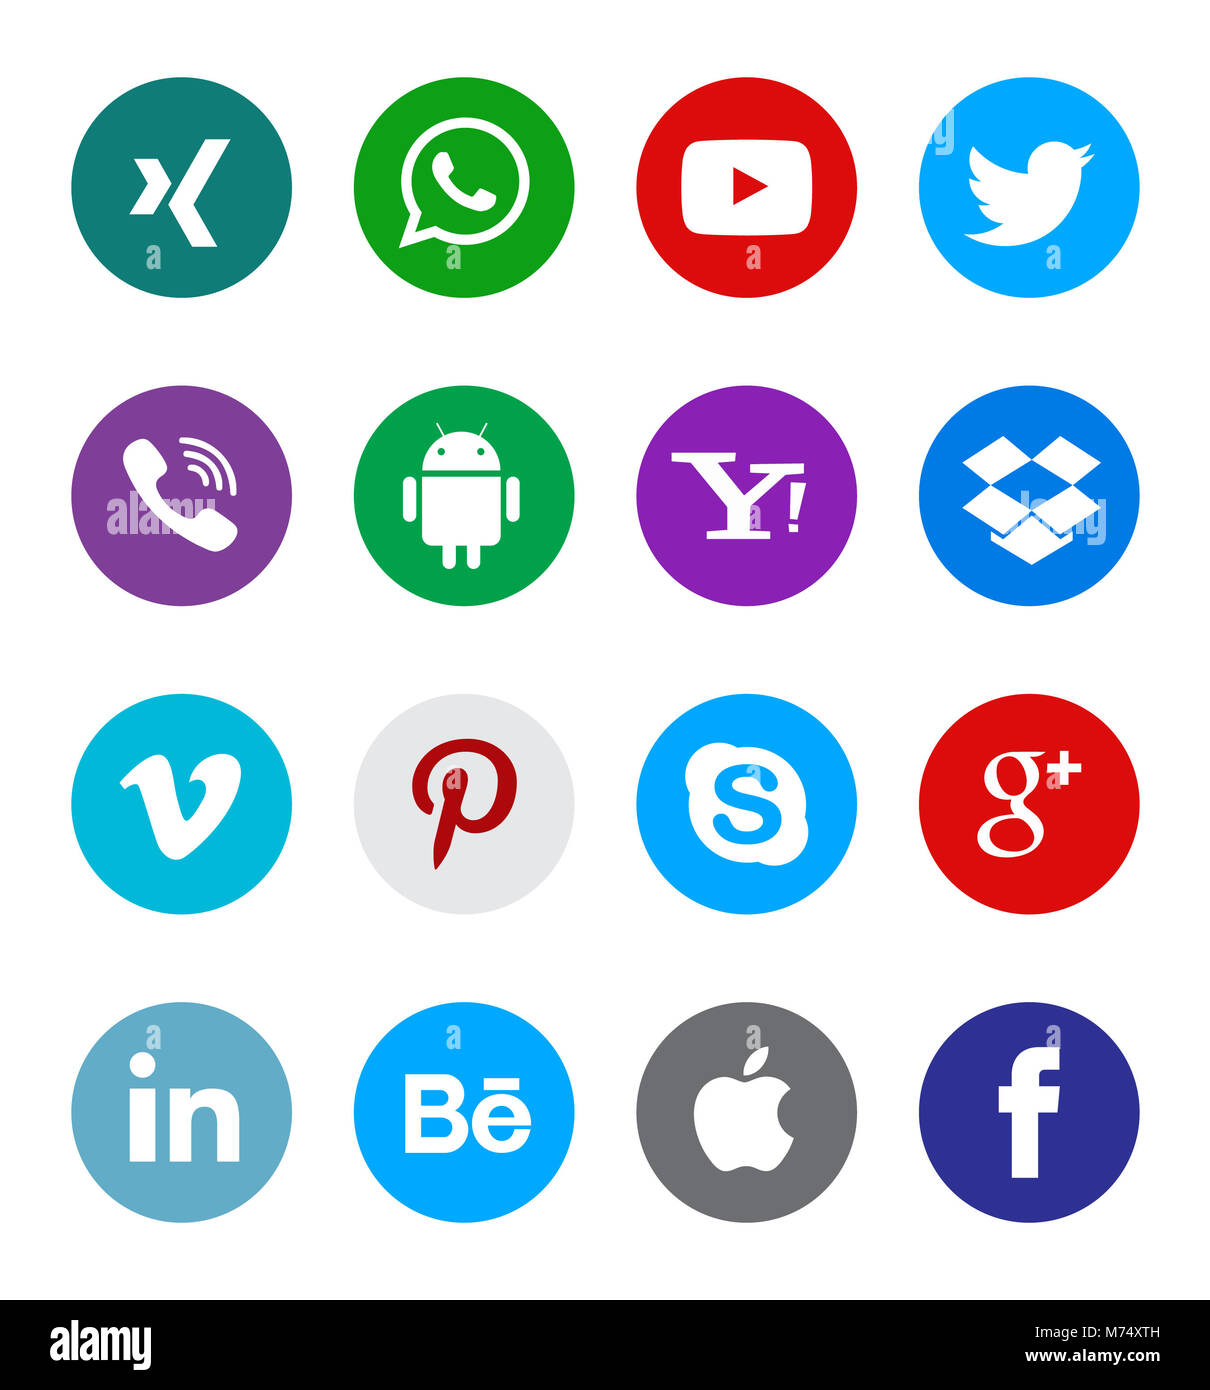 Social media icon collection avec différents types de bouton web icon set Banque D'Images